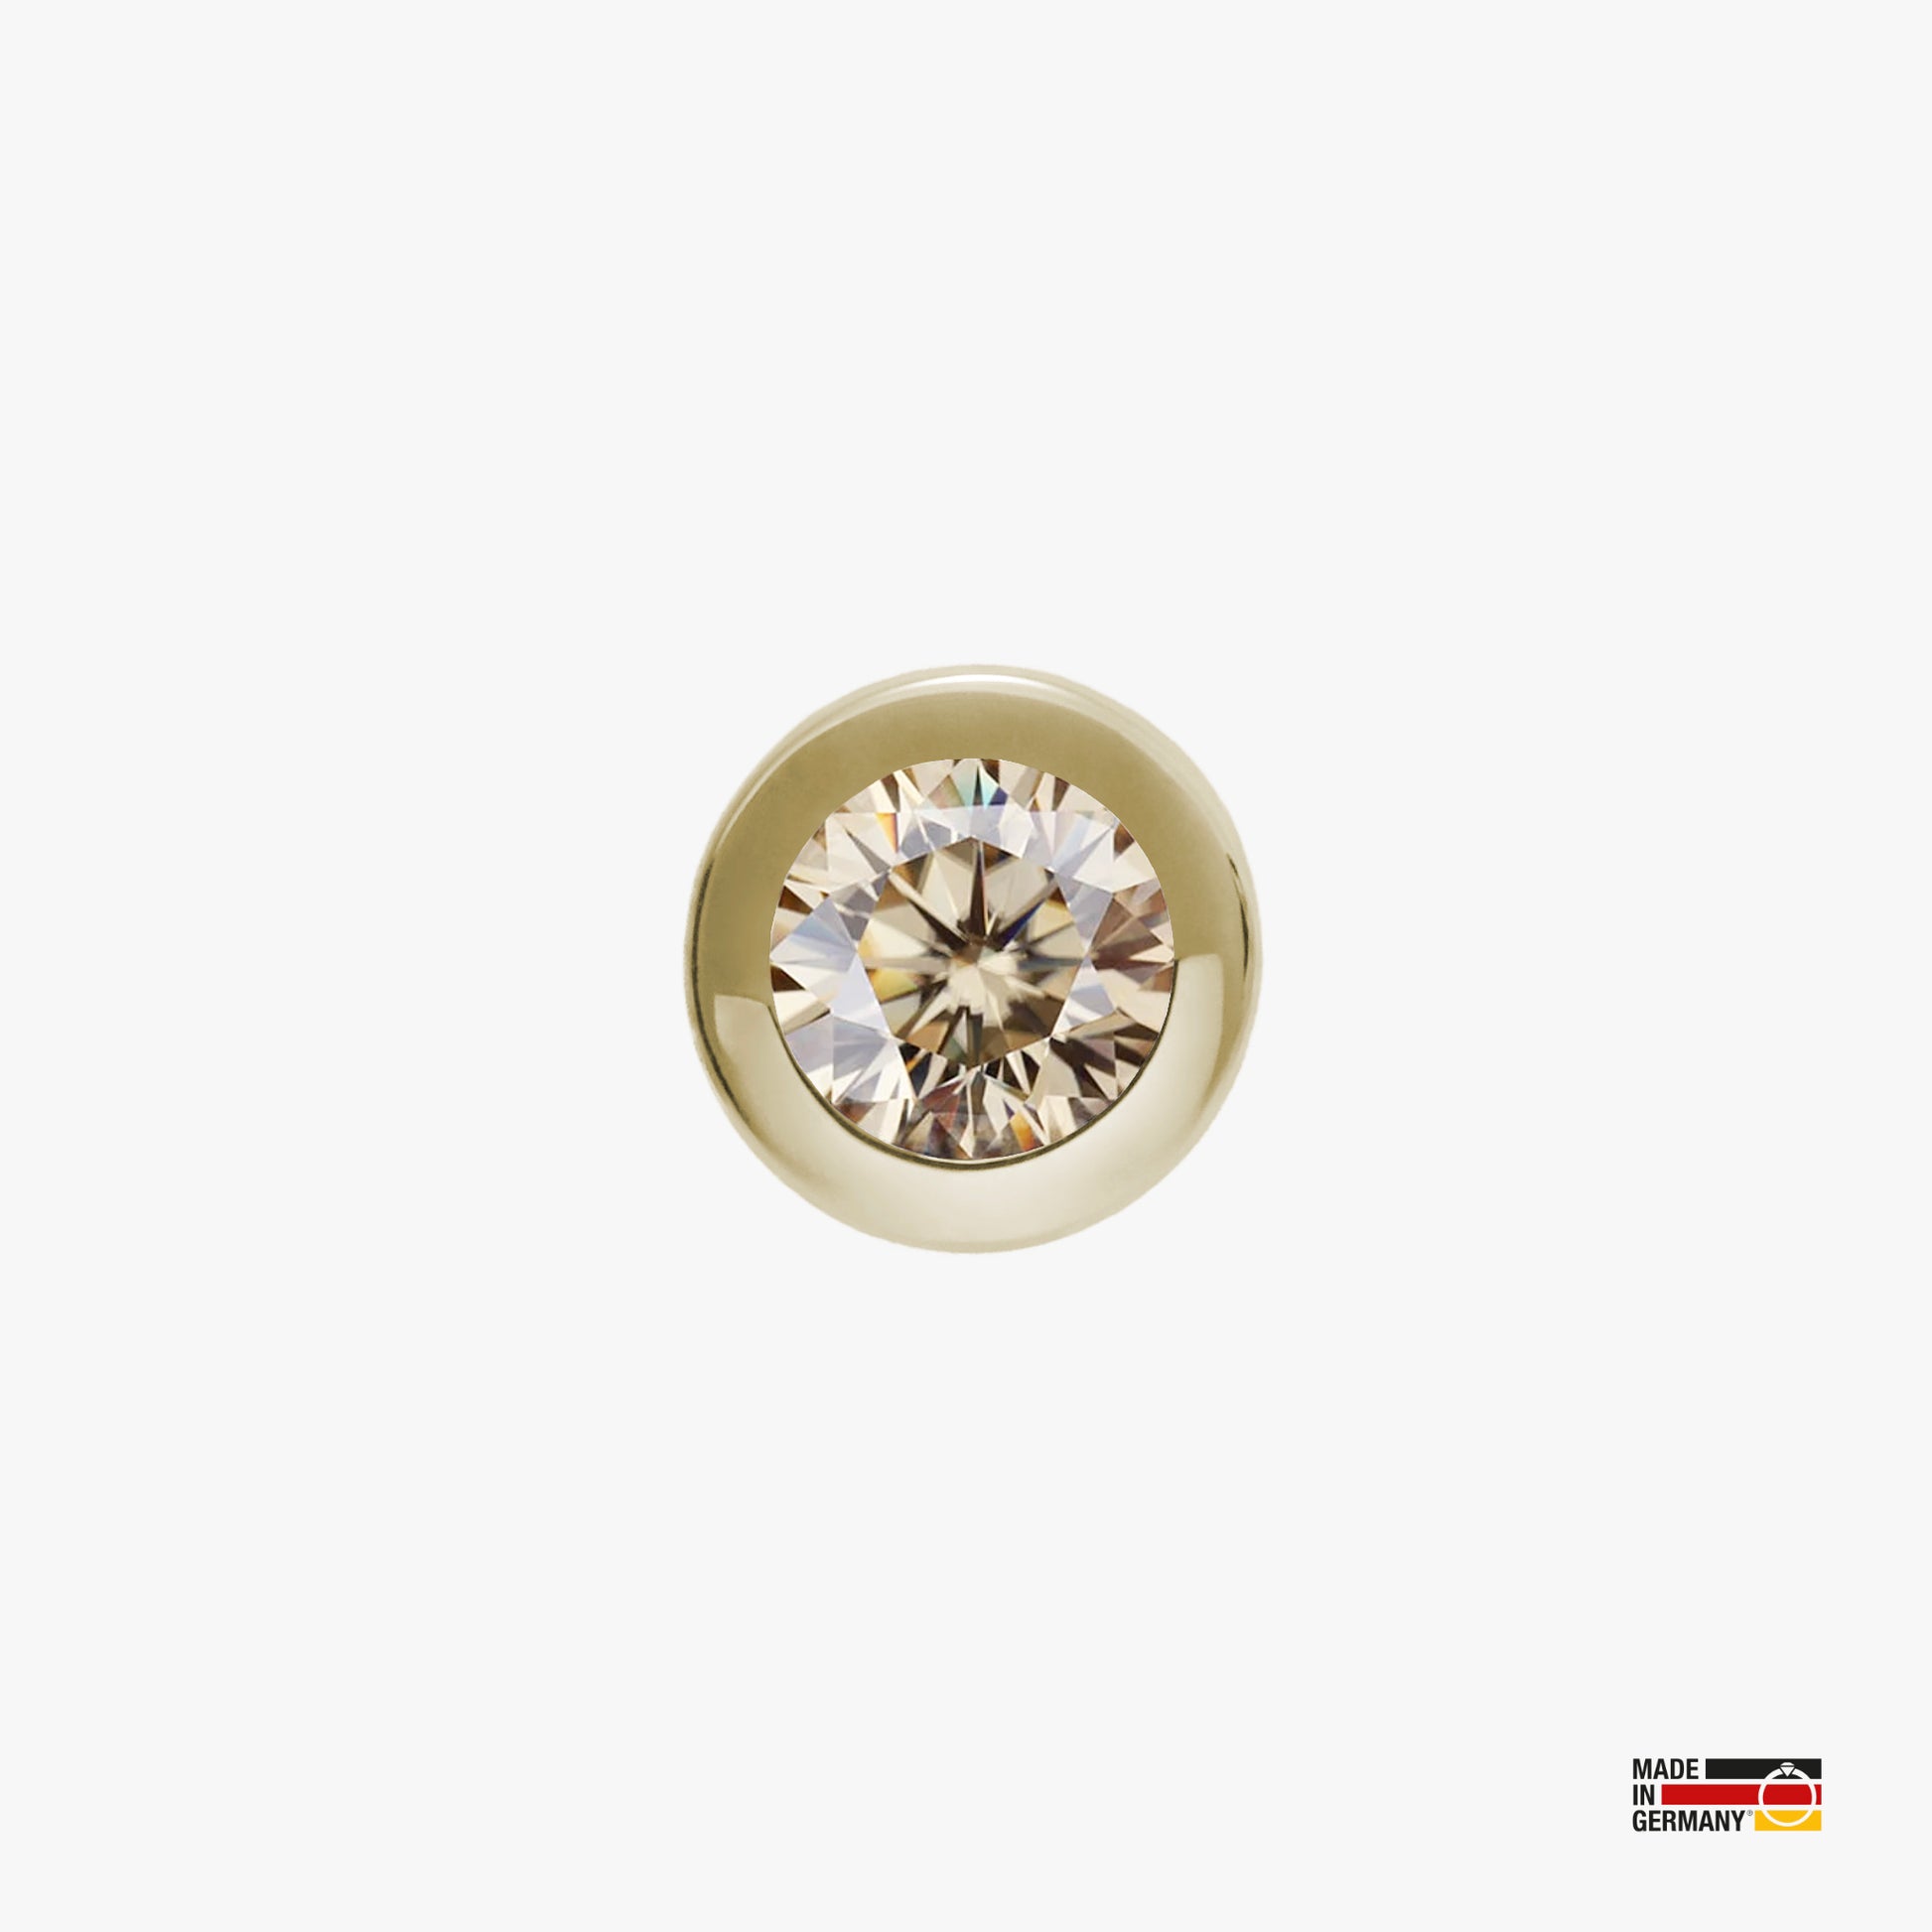 Pamoro® Charm für Apple Watch Sportarmbänder - Schmuck in Silber 24k Gold plattiert mit Cubic Zirkonia in champagner - Schraubmechanik